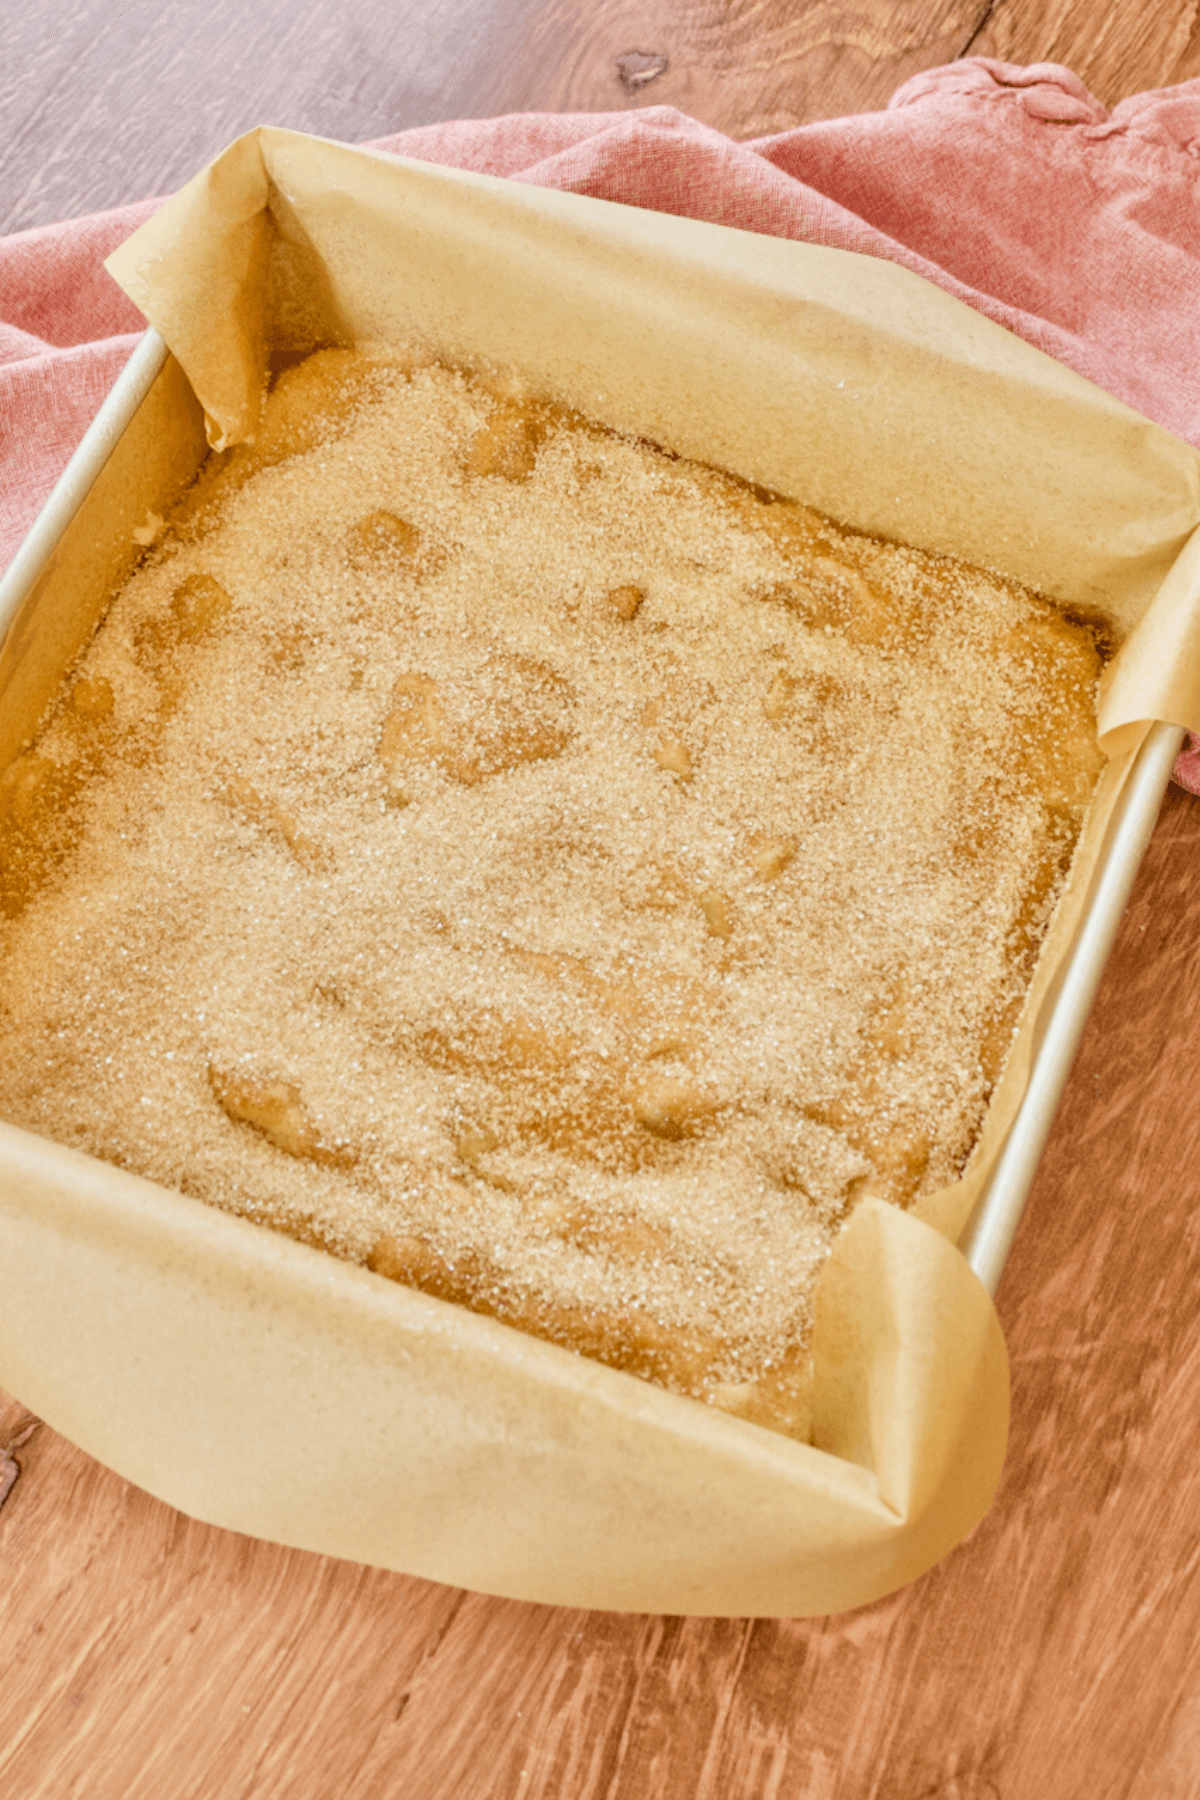 Cinnamon sugar mixture on rhubarb cake.